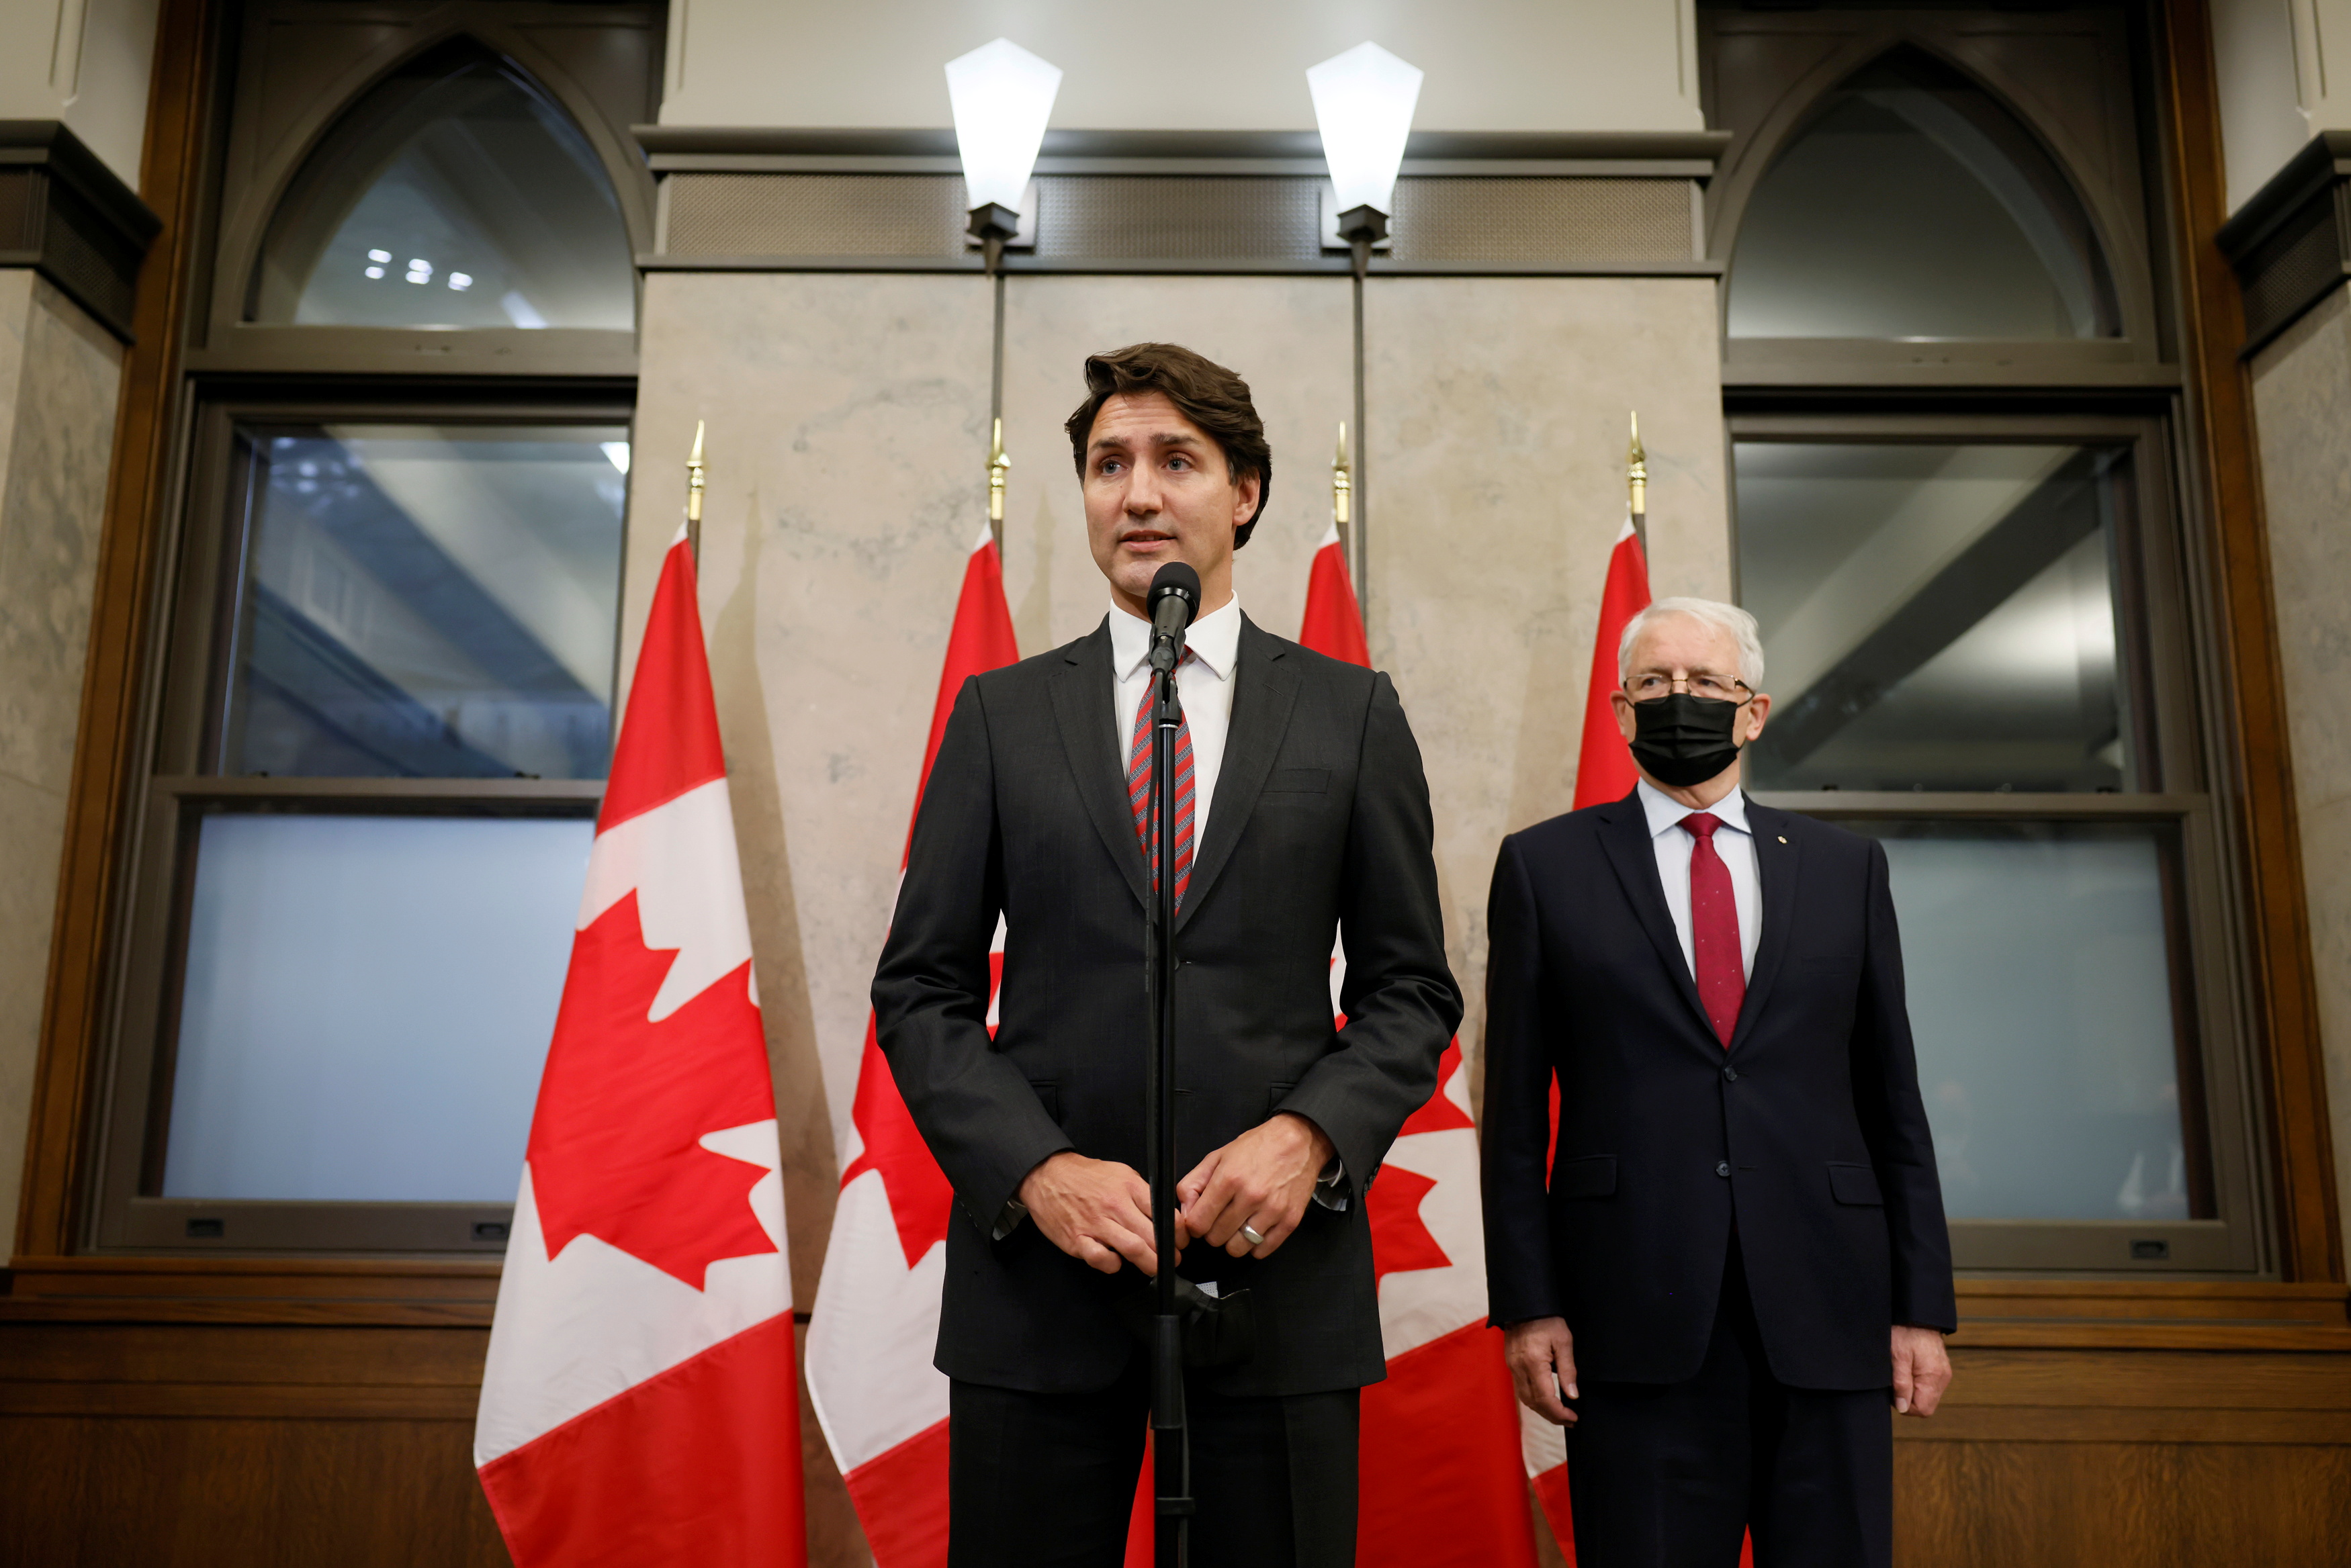 Ottawa ha acusado en las últimas semanas al gobierno chino de interferir con sus instituciones democráticas y su sistema judicial, después de años de relaciones tensas entre los dos países. (REUTERS)